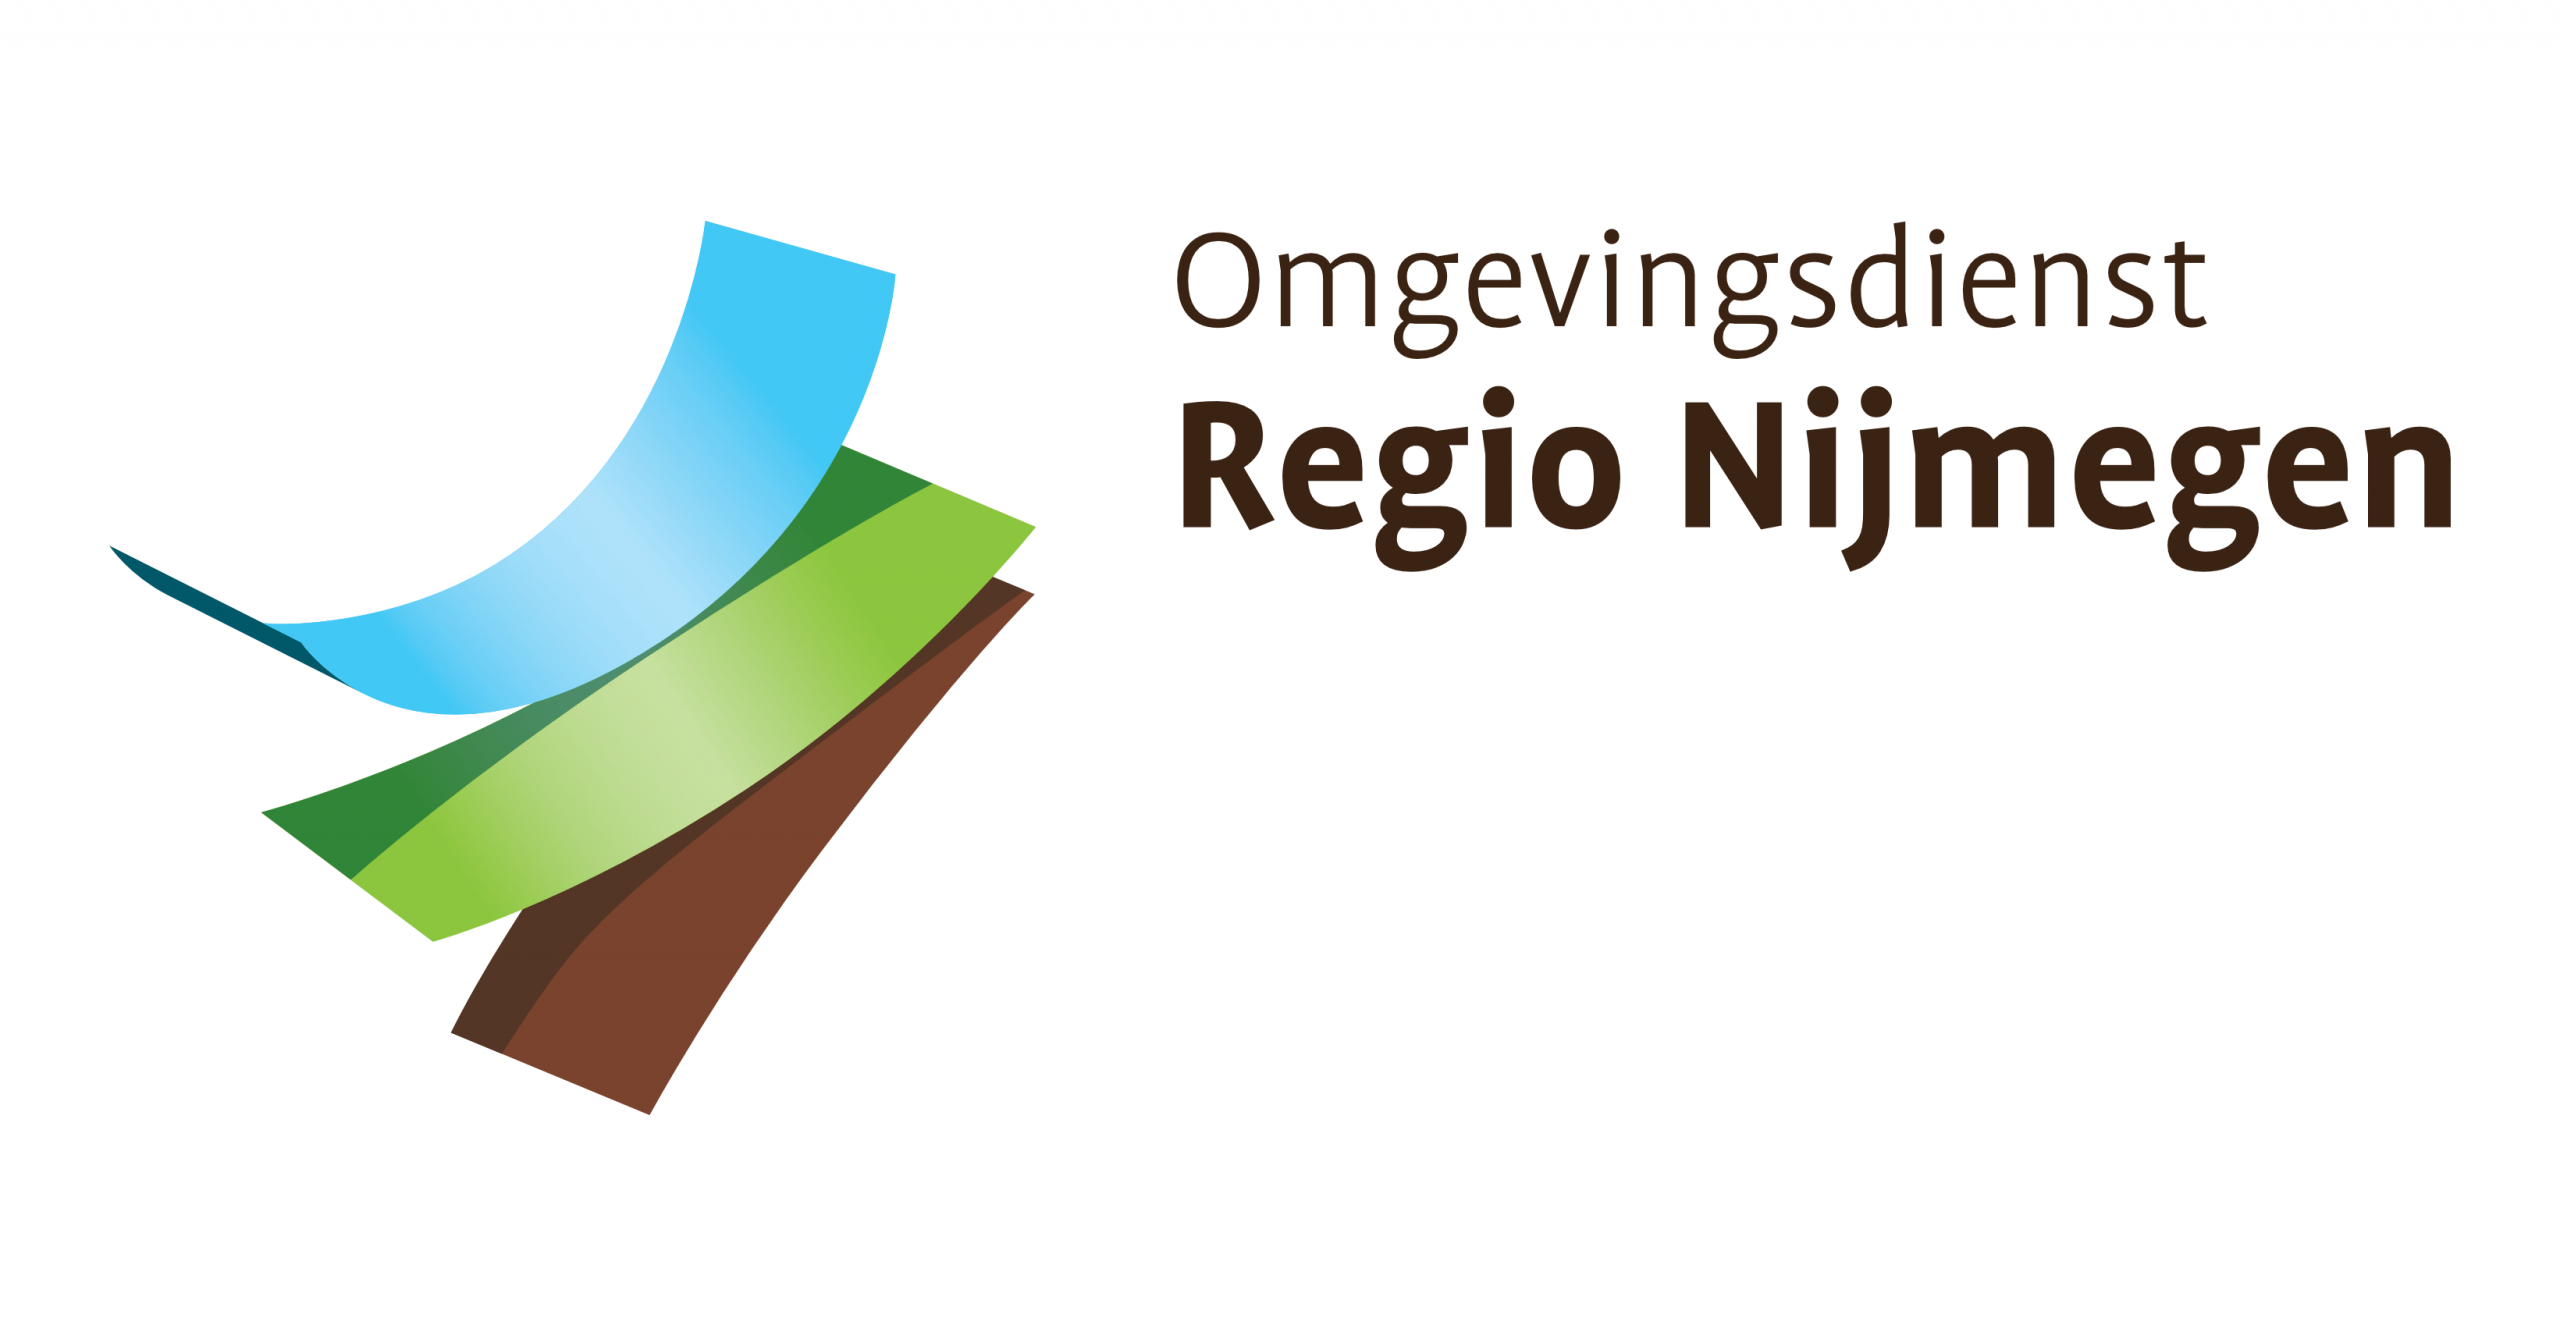 Omgevingsdienst Regio Nijmegen